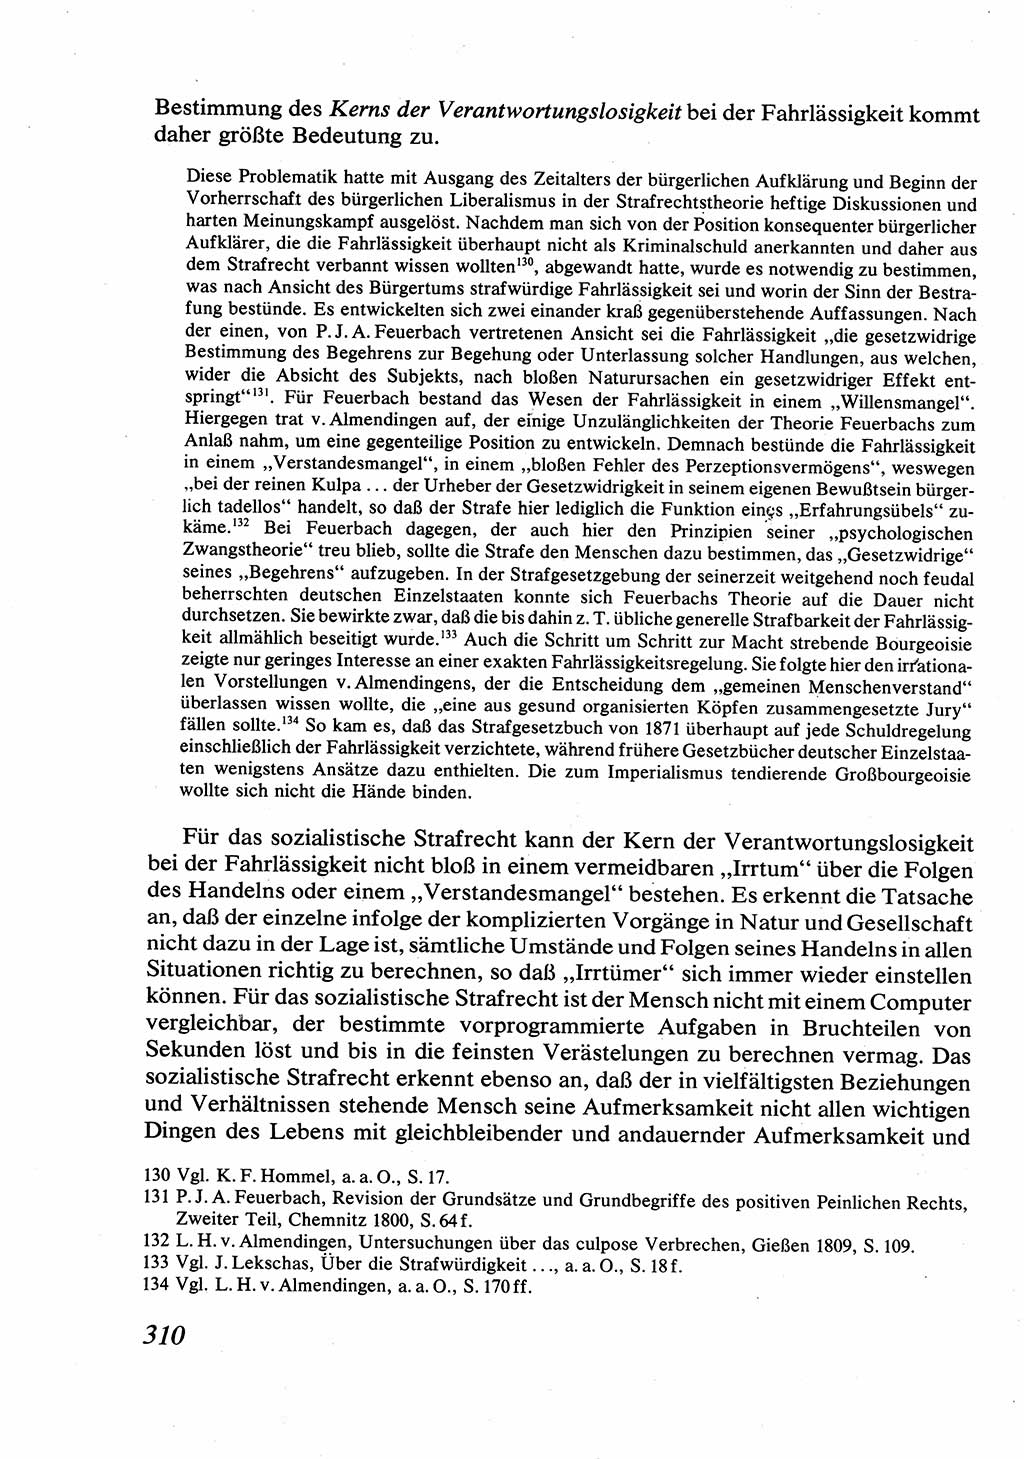 Strafrecht [Deutsche Demokratische Republik (DDR)], Allgemeiner Teil, Lehrbuch 1976, Seite 310 (Strafr. DDR AT Lb. 1976, S. 310)